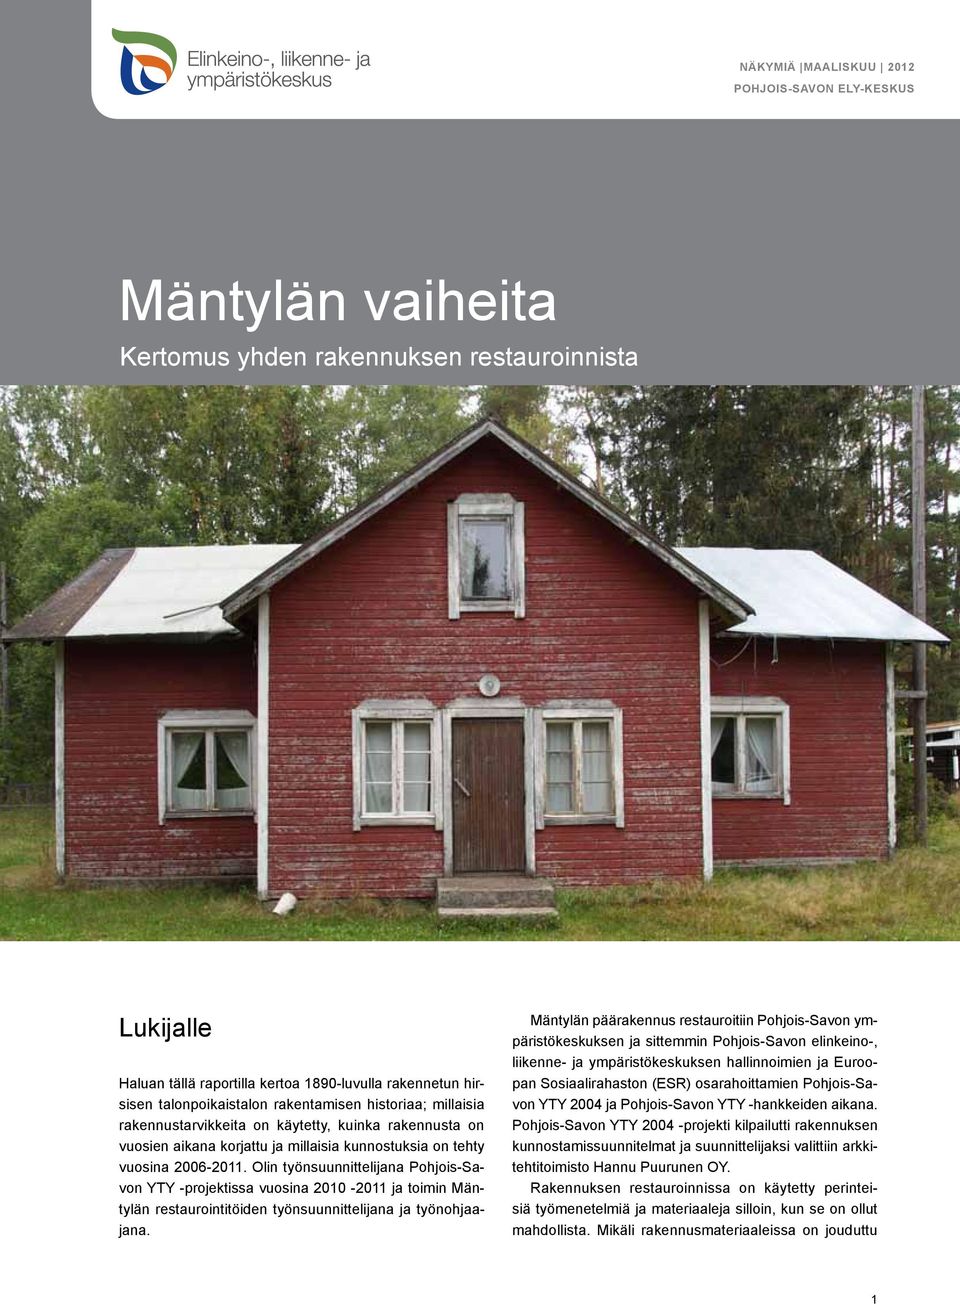 Olin työnsuunnittelijana Pohjois-Savon YTY -projektissa vuosina 2010-2011 ja toimin Mäntylän restaurointitöiden työnsuunnittelijana ja työnohjaajana.